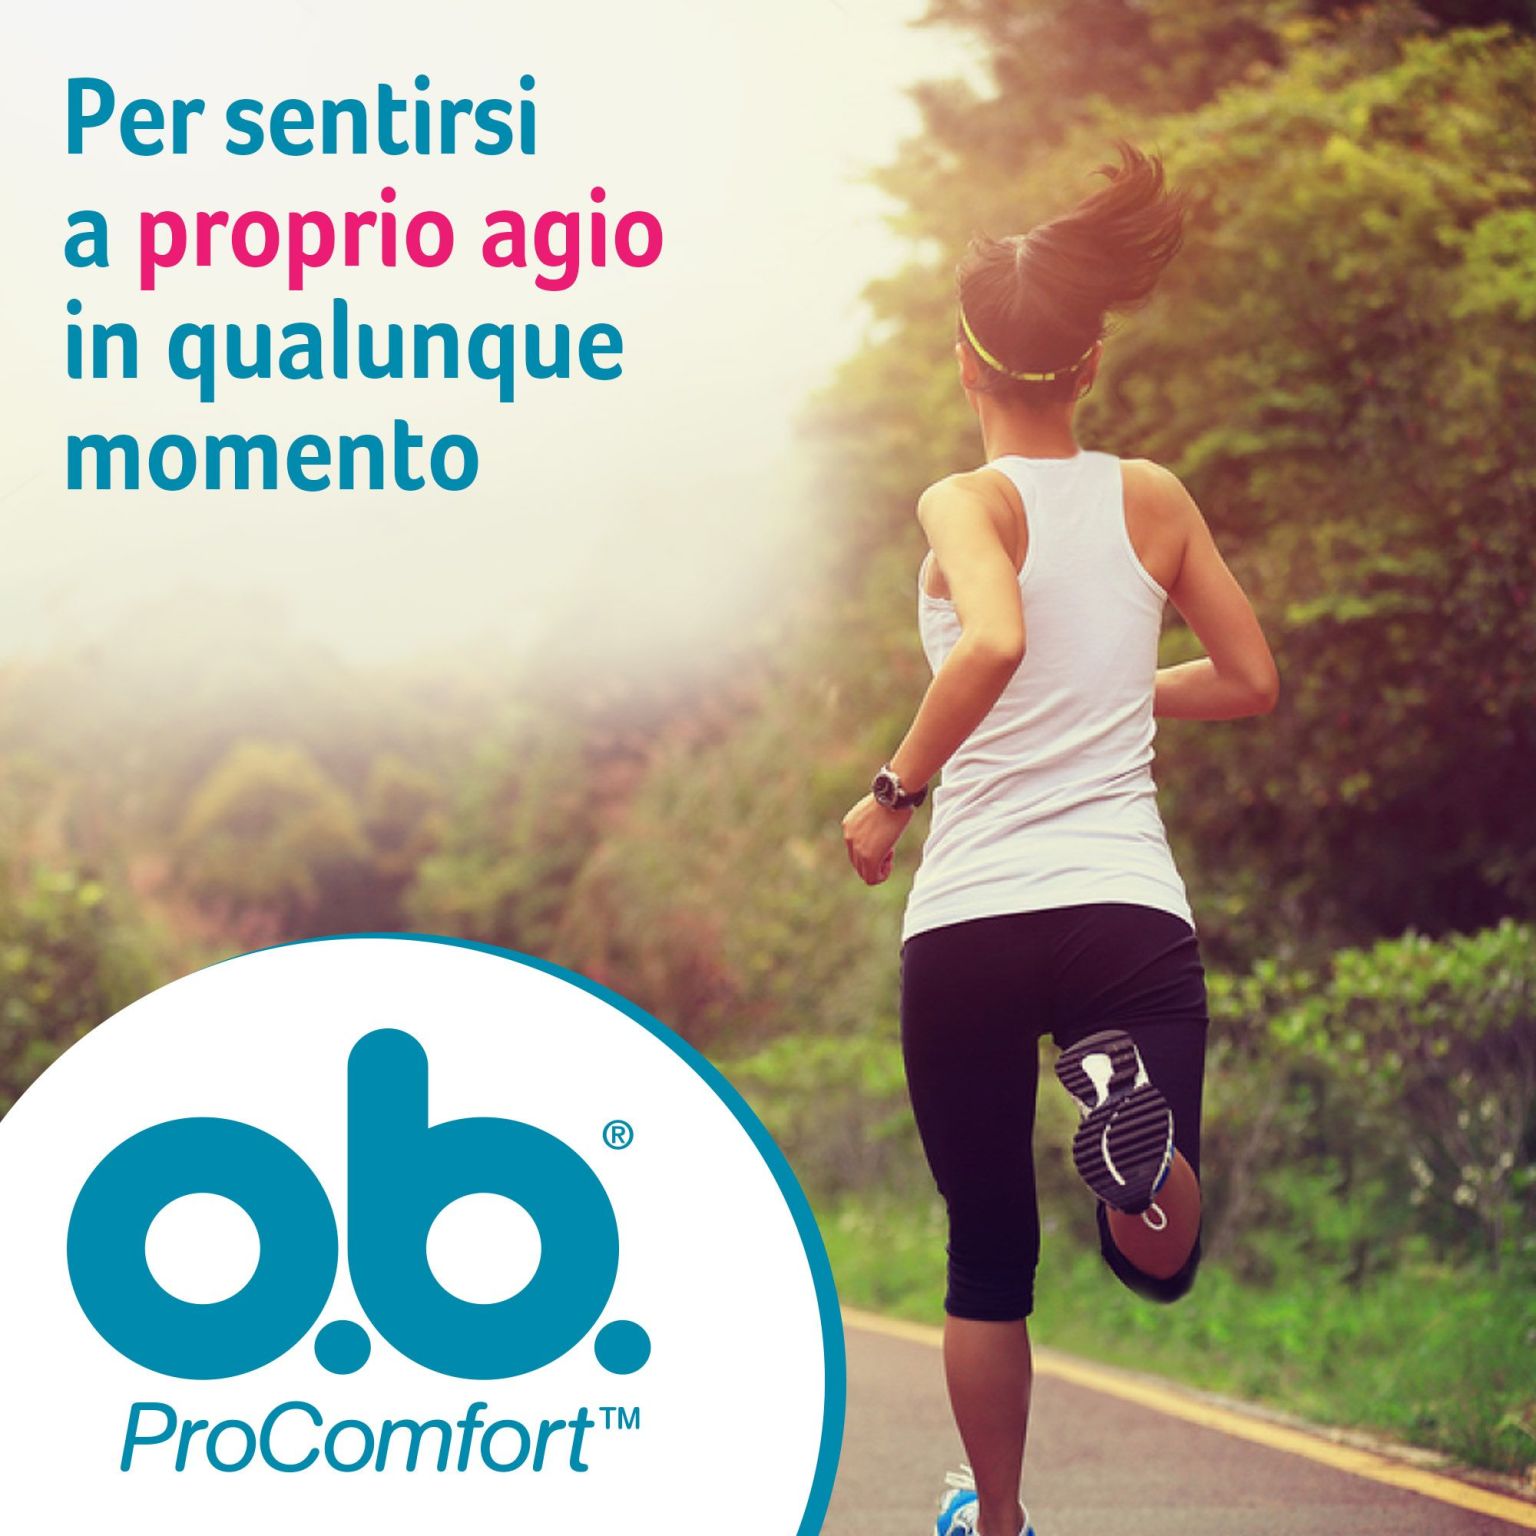 905950996 - Ob Mini Pro Comfort Assorbenti 16 pezzi - 7875903_3.jpg